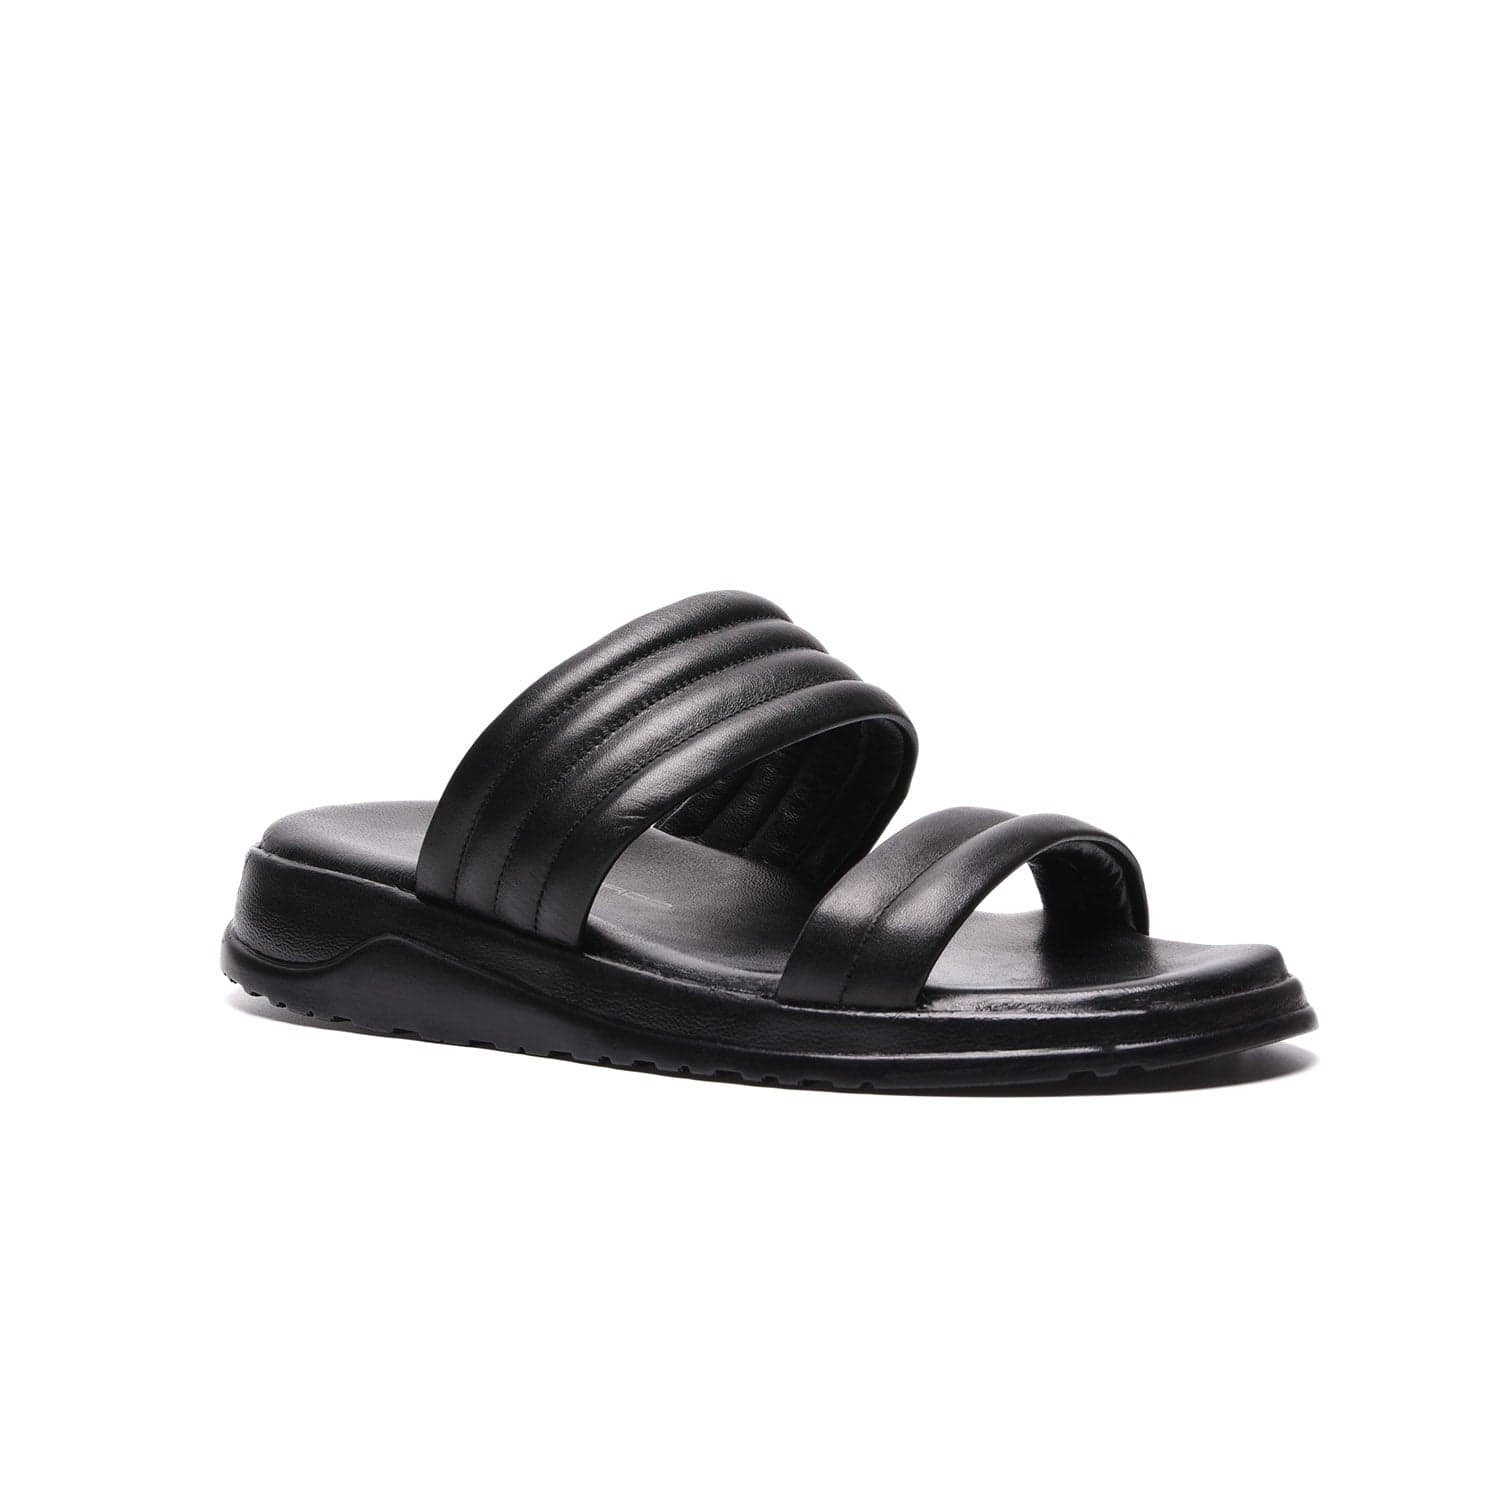 John Richardo Men'S Sandals Black  - 2872-1